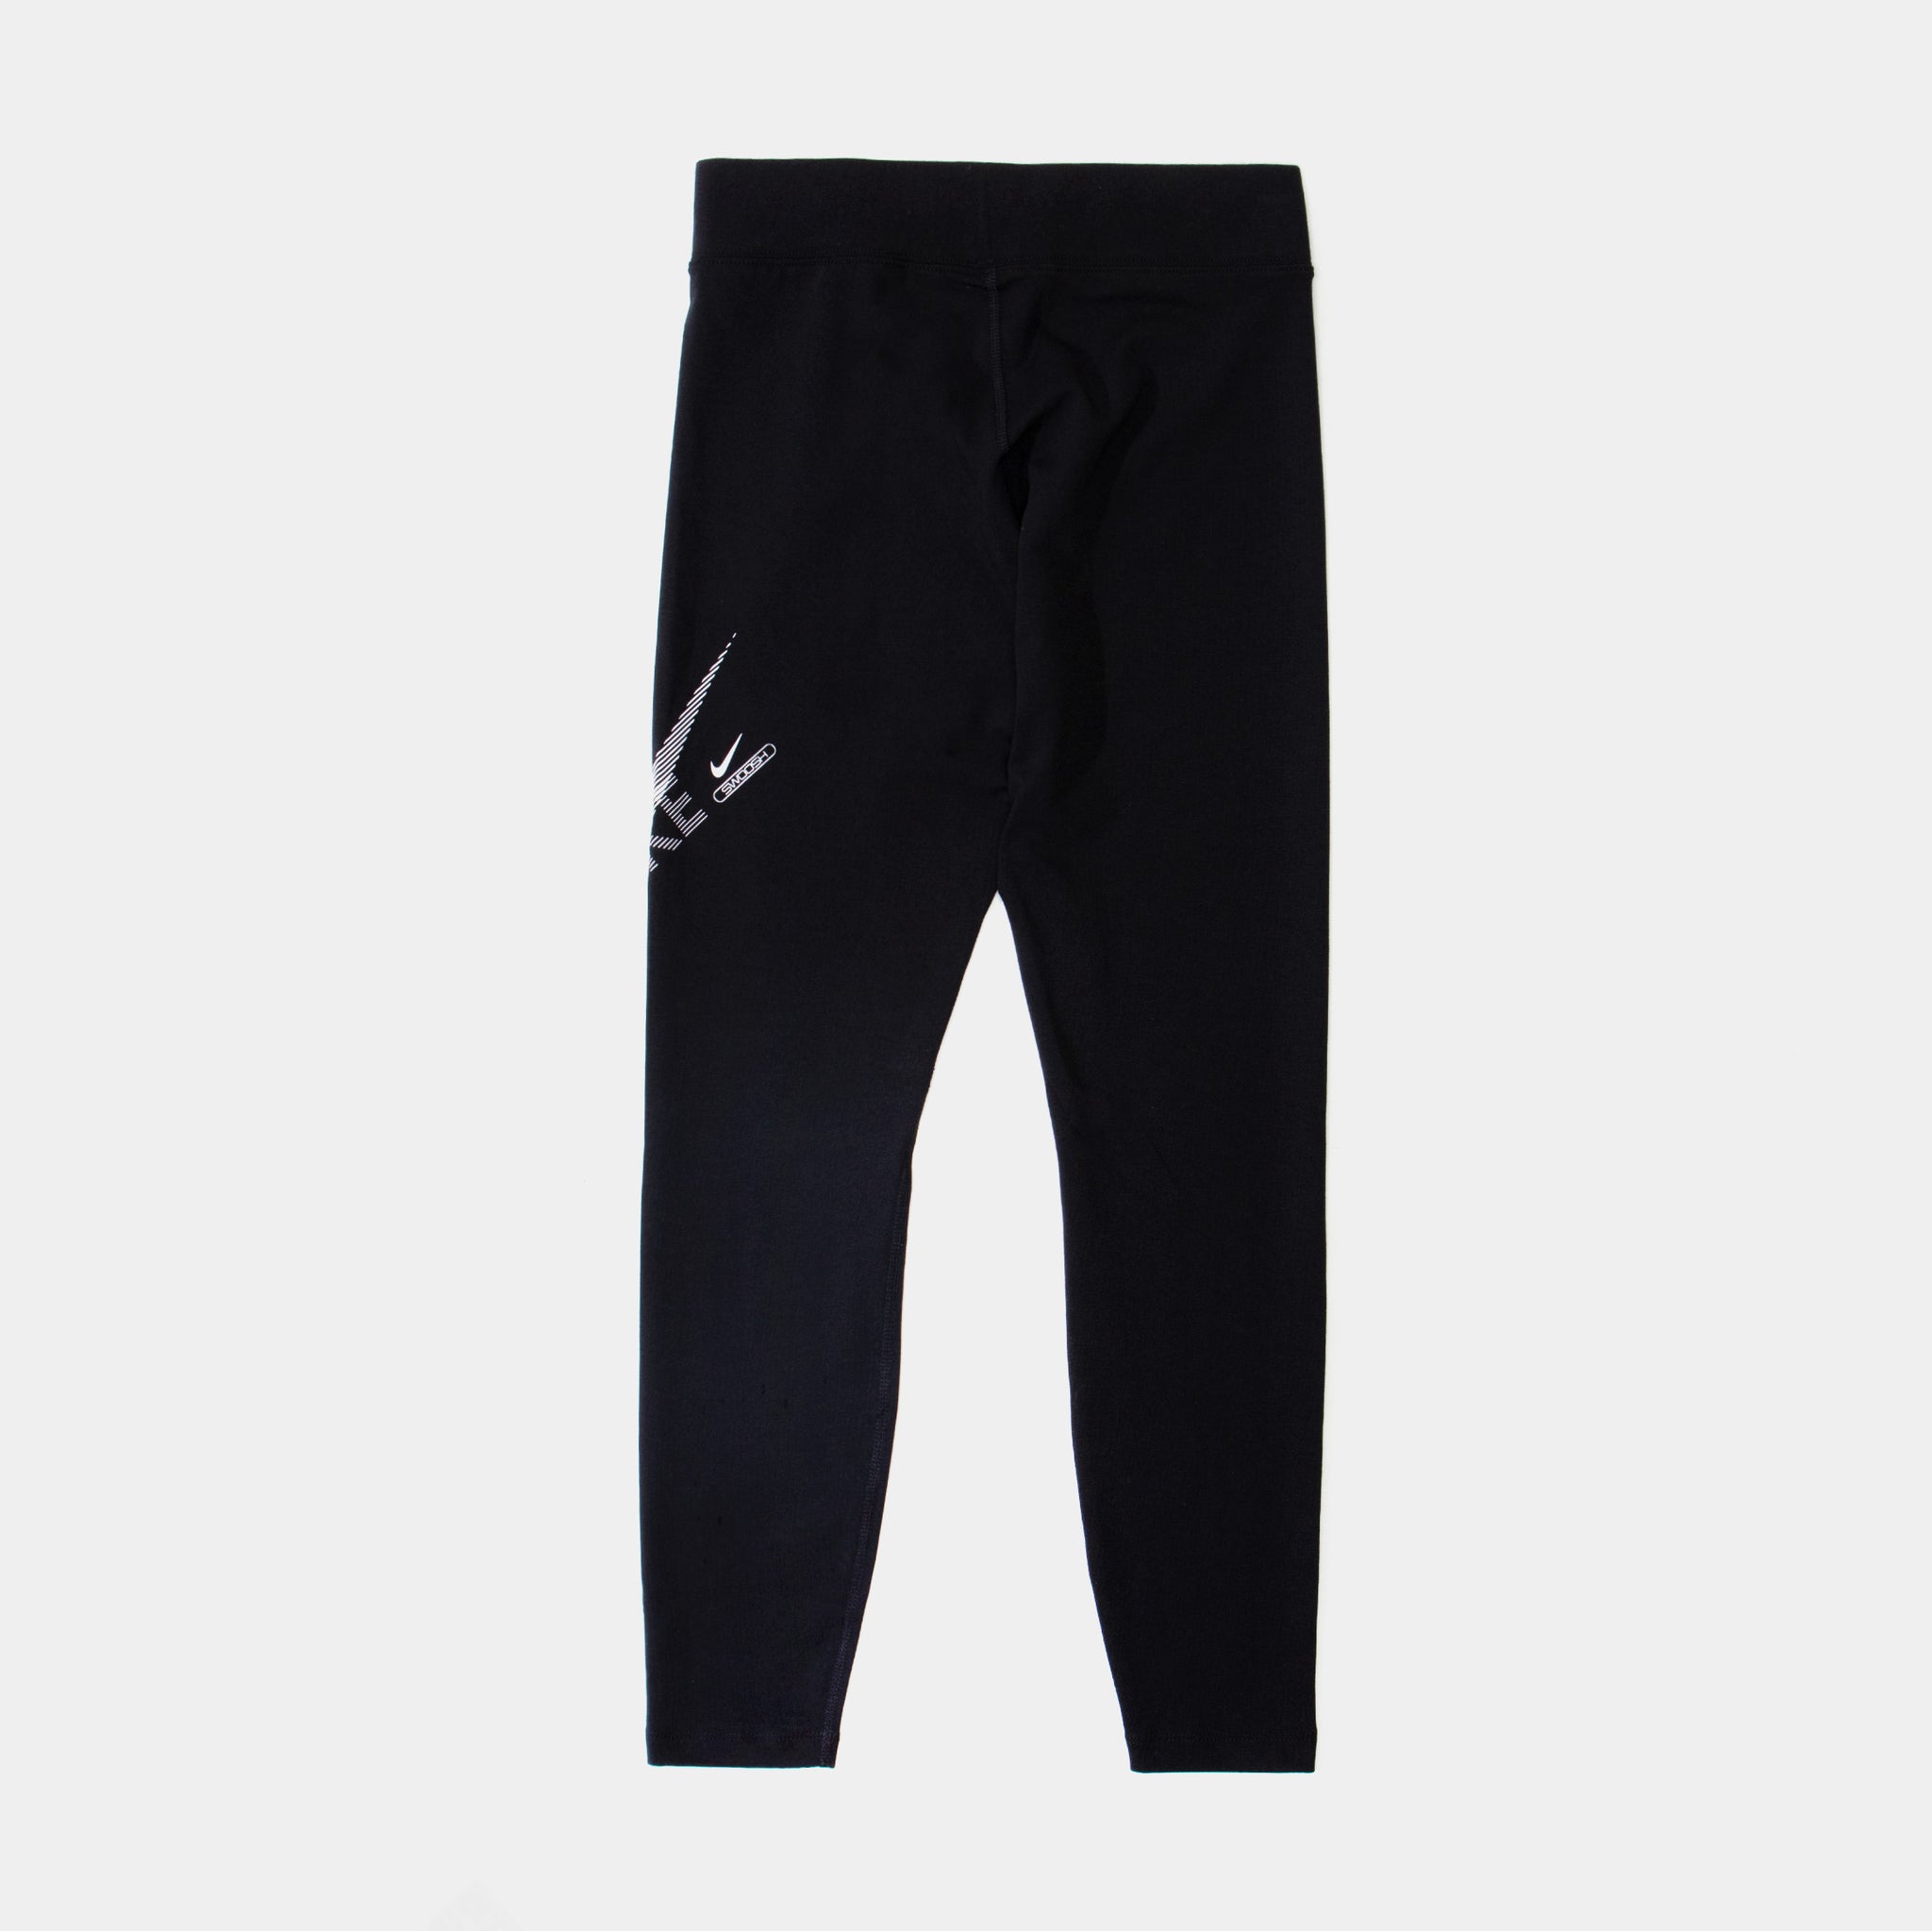 Nike Women's Sportswear SWOOSH Leggings LIMITED - Black DR5617 010 - Size XS